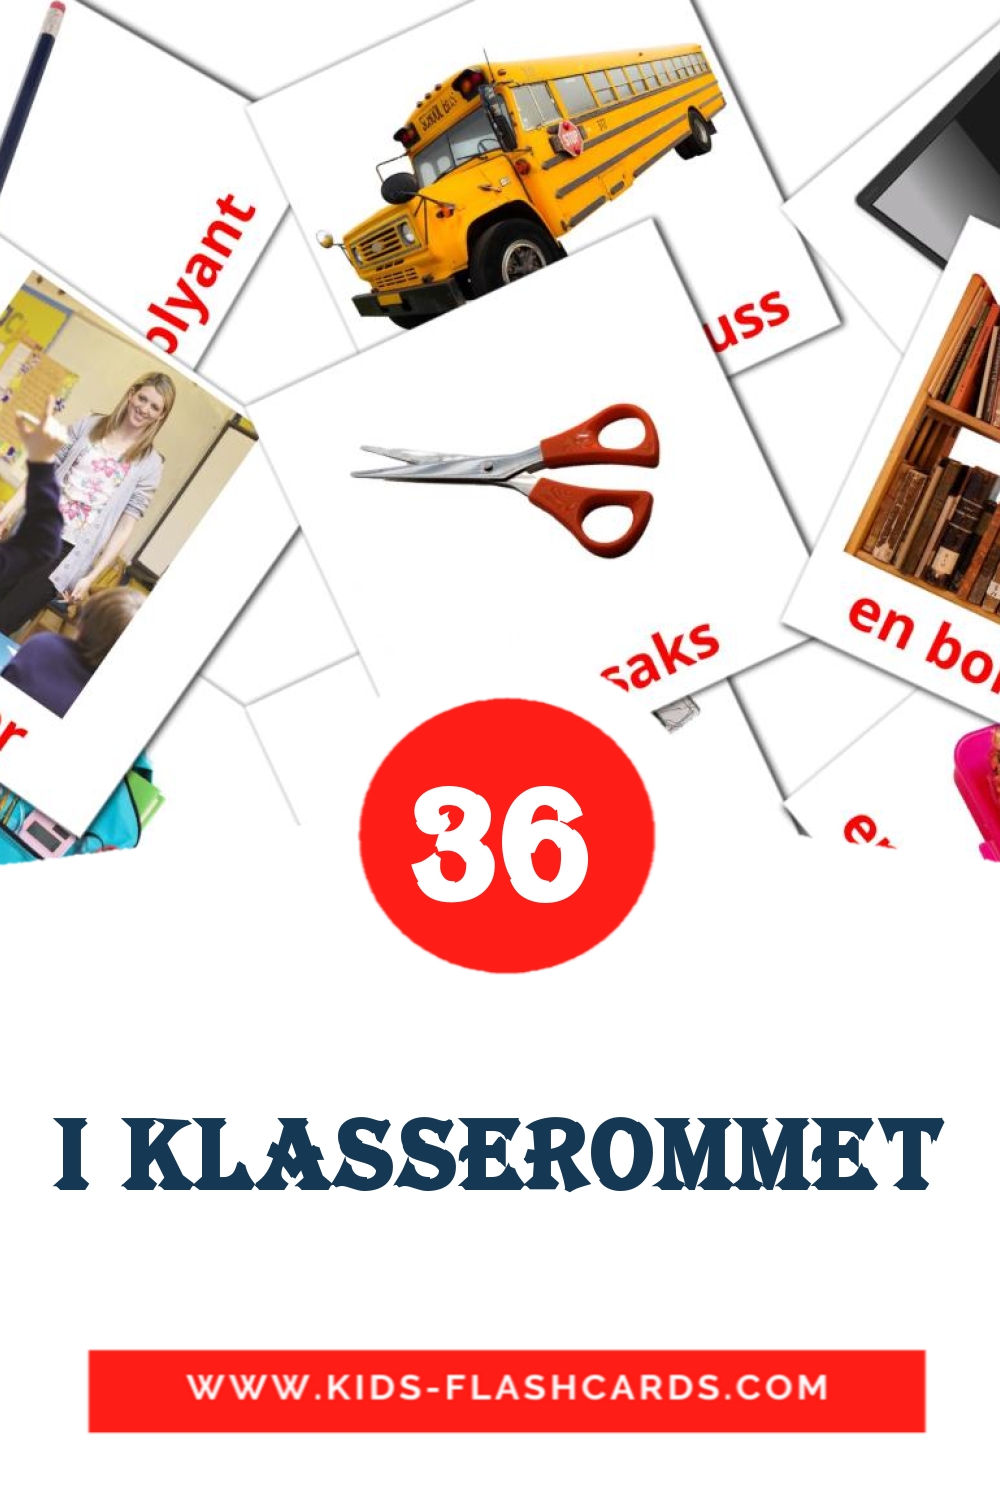 I klasserommet на норвежском для Детского Сада (36 карточек)